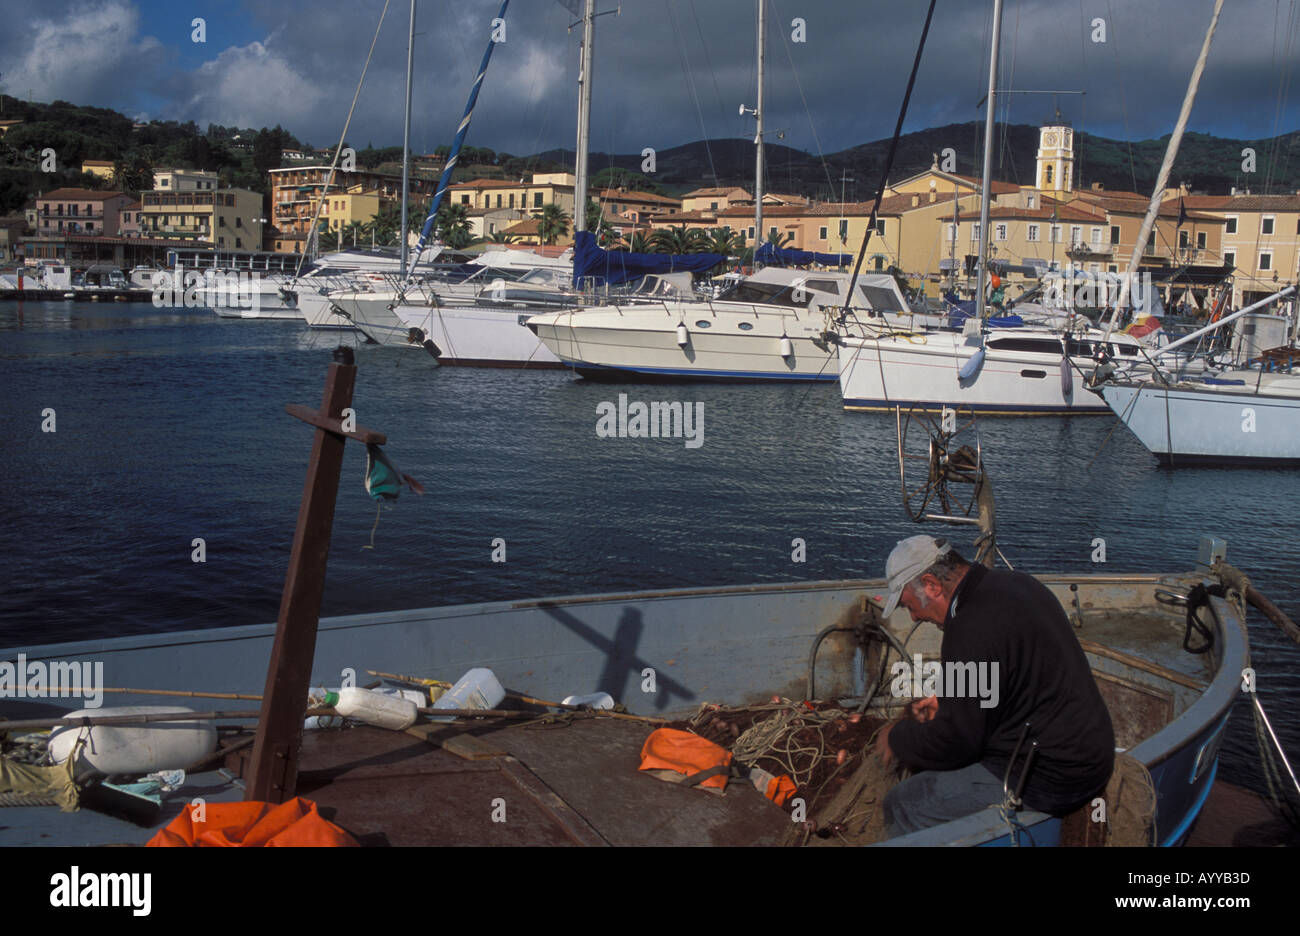 Fisherman commercial mending net in skiff in harbor of town Porto Azzurro Island Elba Italy Stock Photo